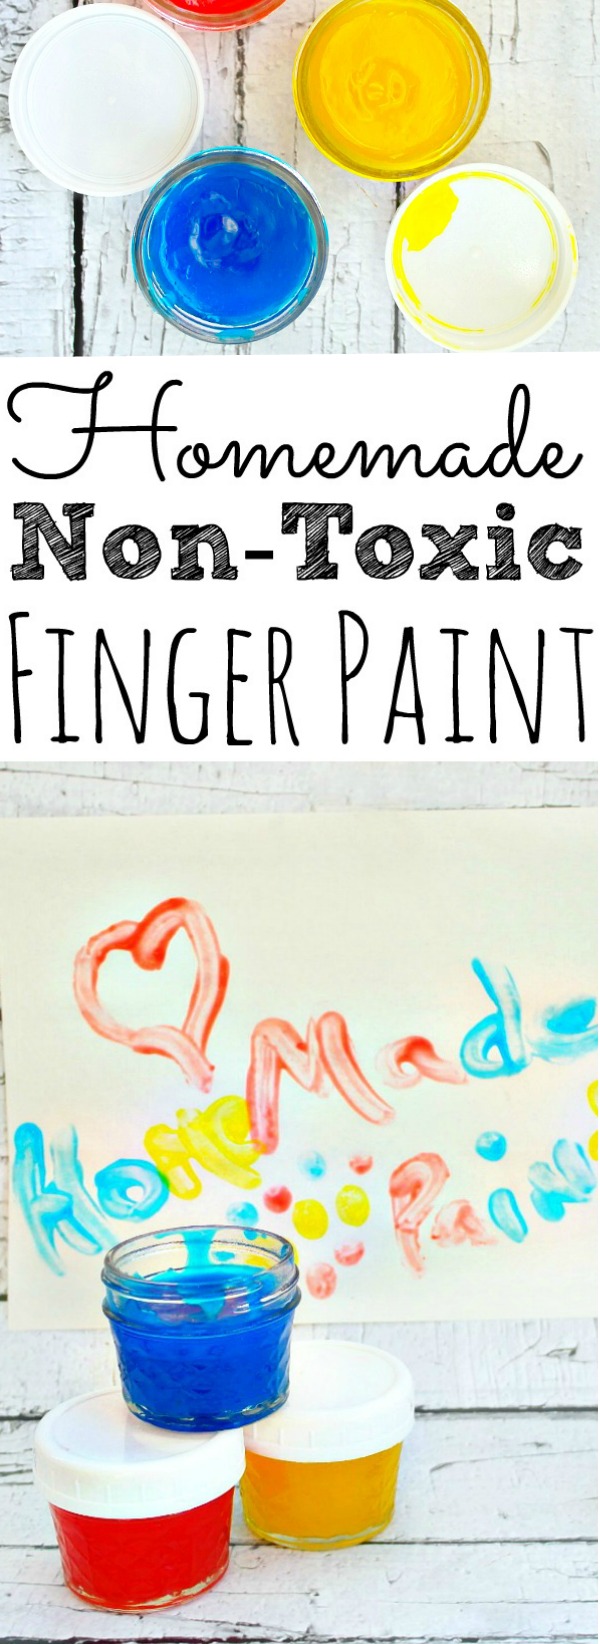 Finger Paint Recipe Homemade